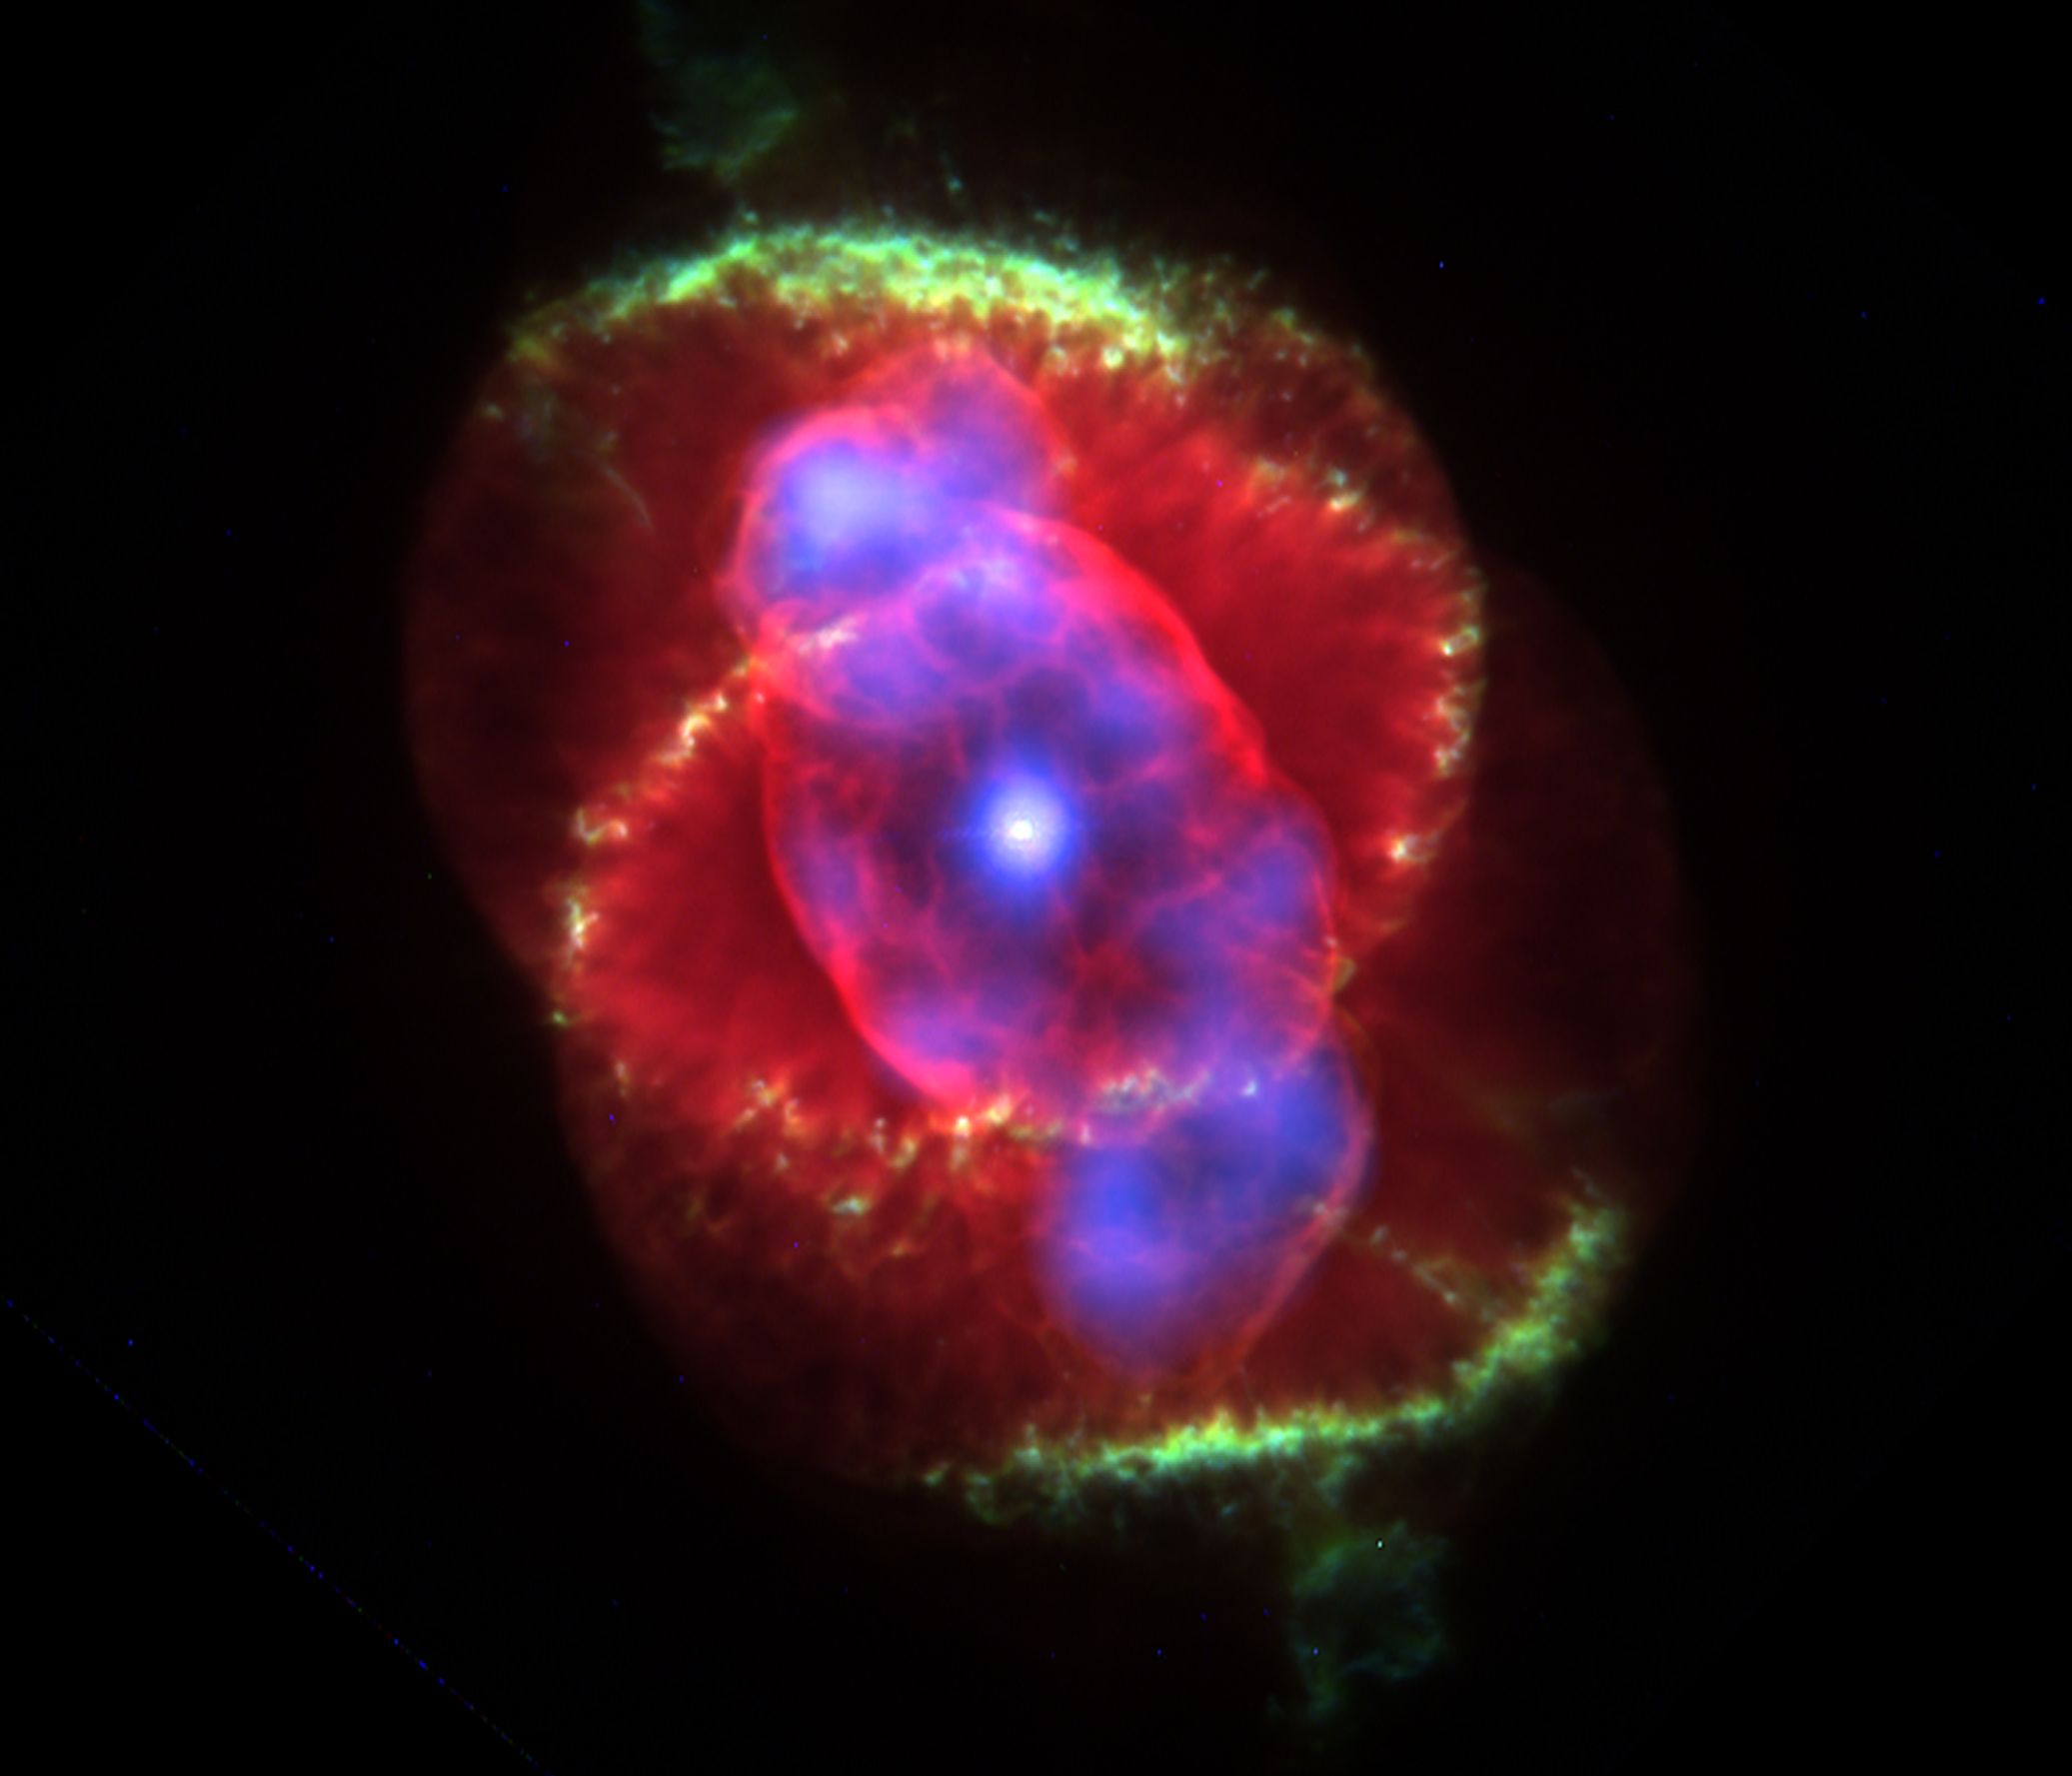 Cat's Eye planetary nebula, image by Prof. You-Hua Chu